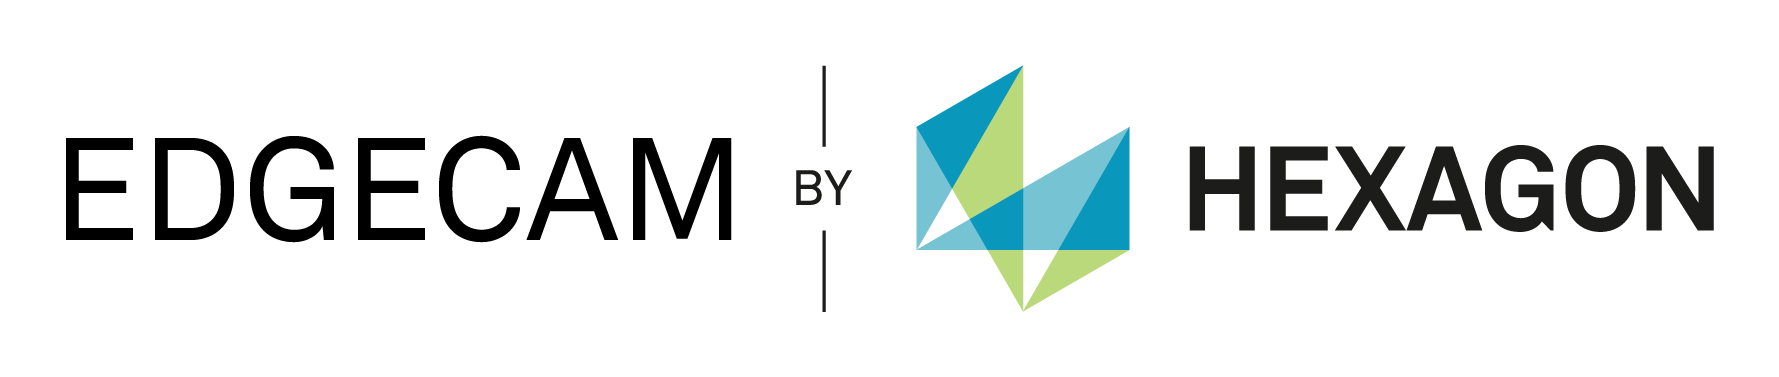 Hexagon EDGECAM logo